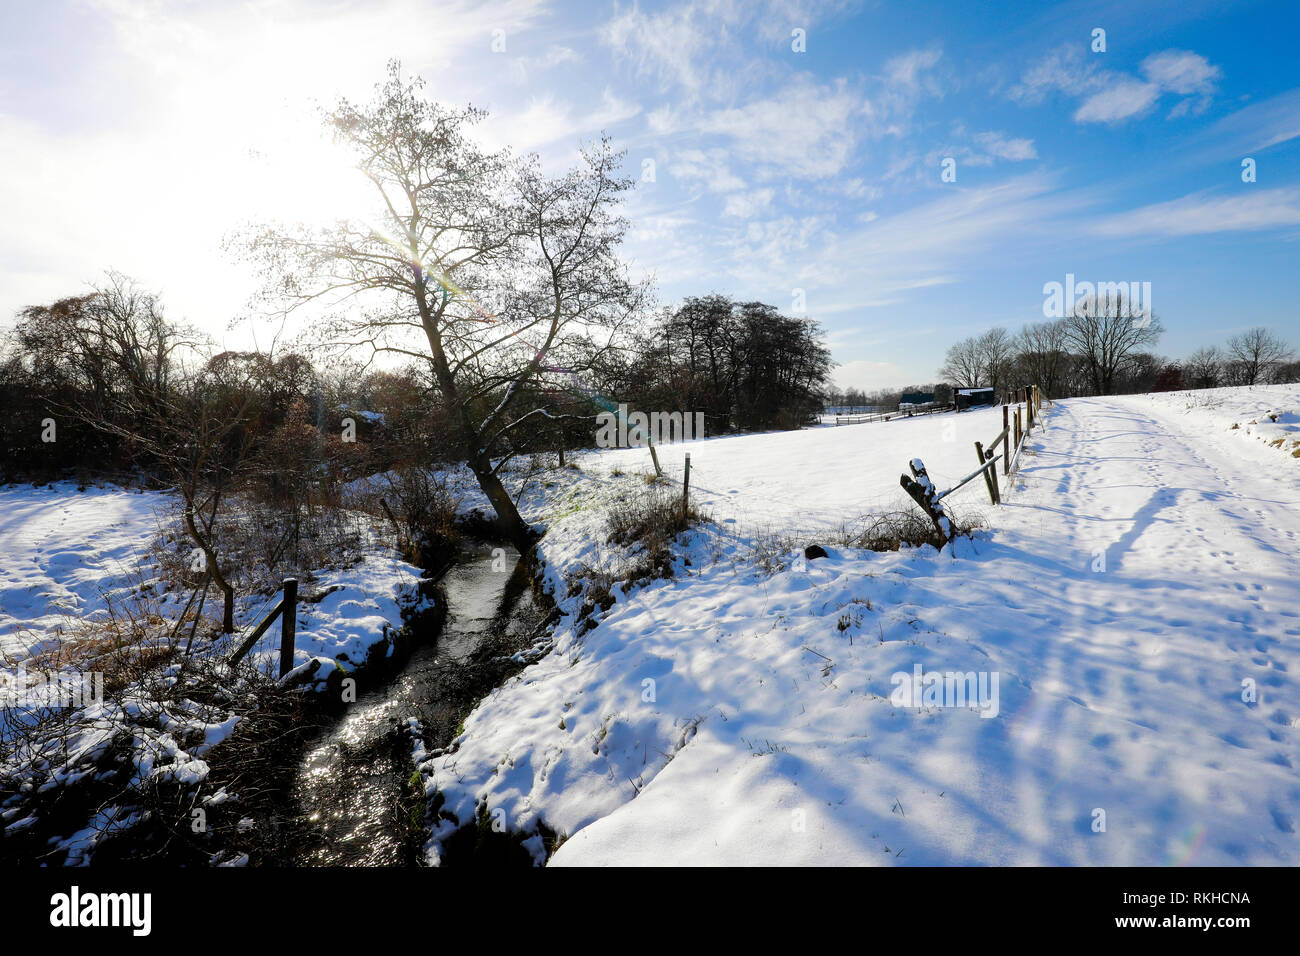 Datteln, Ruhrgebiet, Nordrhein-Westfalen, Deutschland - sonnige Winterlandschaft, Renaturiert Lippe Aue im Winter mit Eis und Schnee, hier ein Cree Stockfoto